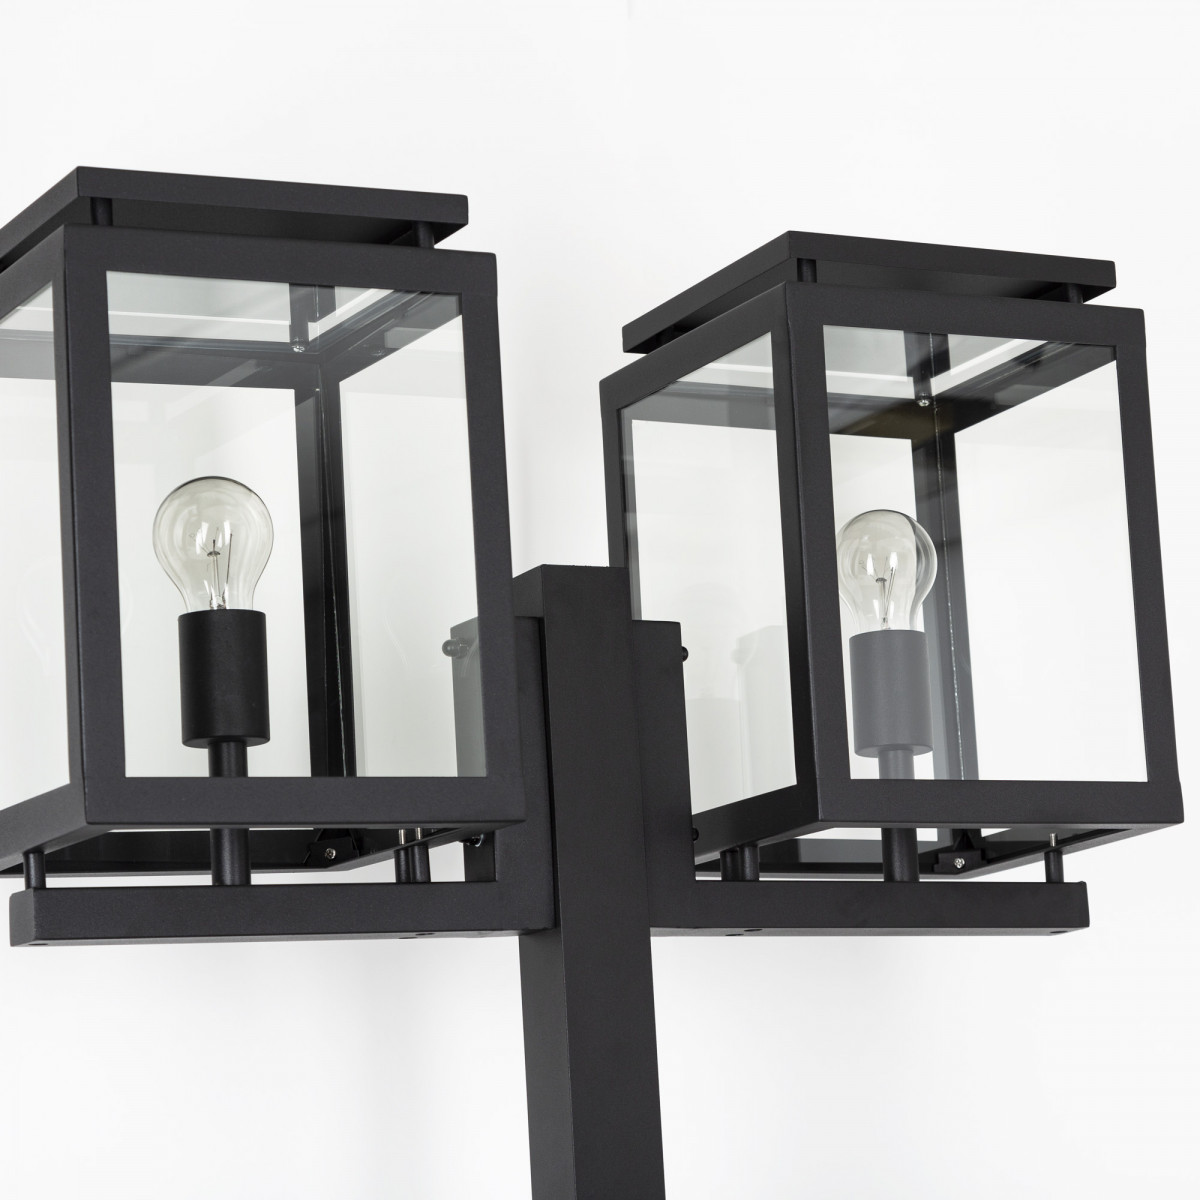 Tuinlamp Vecht lantaarn 2 lichts van KS Verlichting exclusieve tuinverlichting